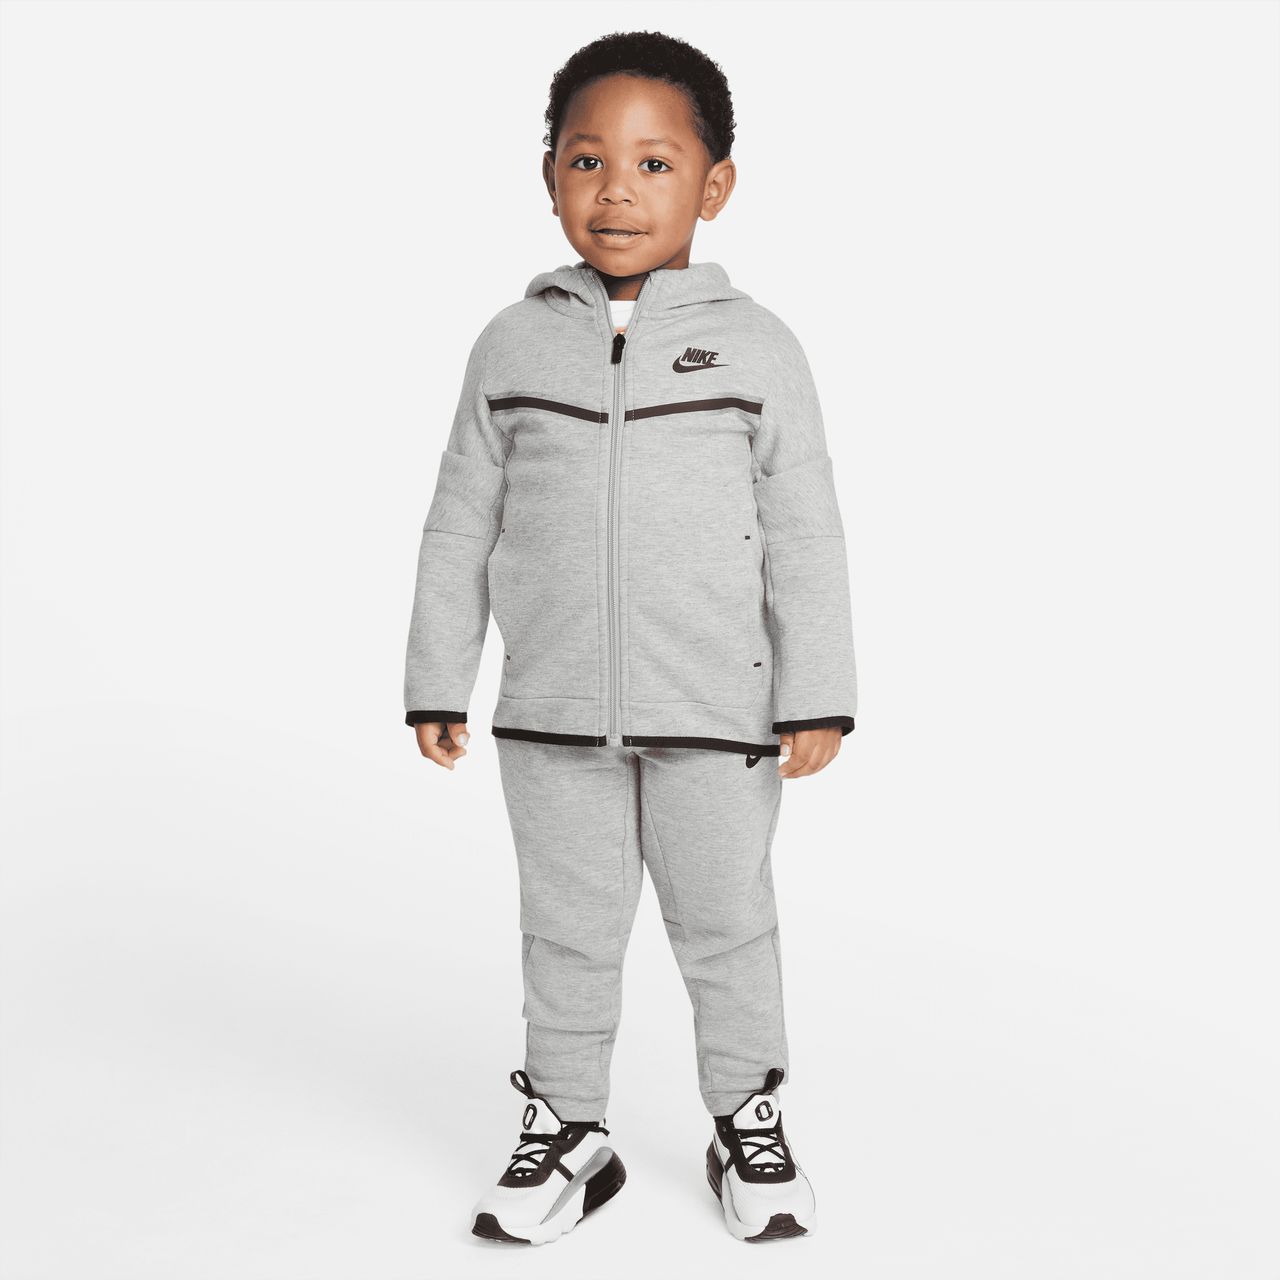 krom Initiatief tofu Nike Sportswear Tech Fleece Peuterset met hoodie en broek - Grijs  DB7388-063 - Vergelijk prijzen